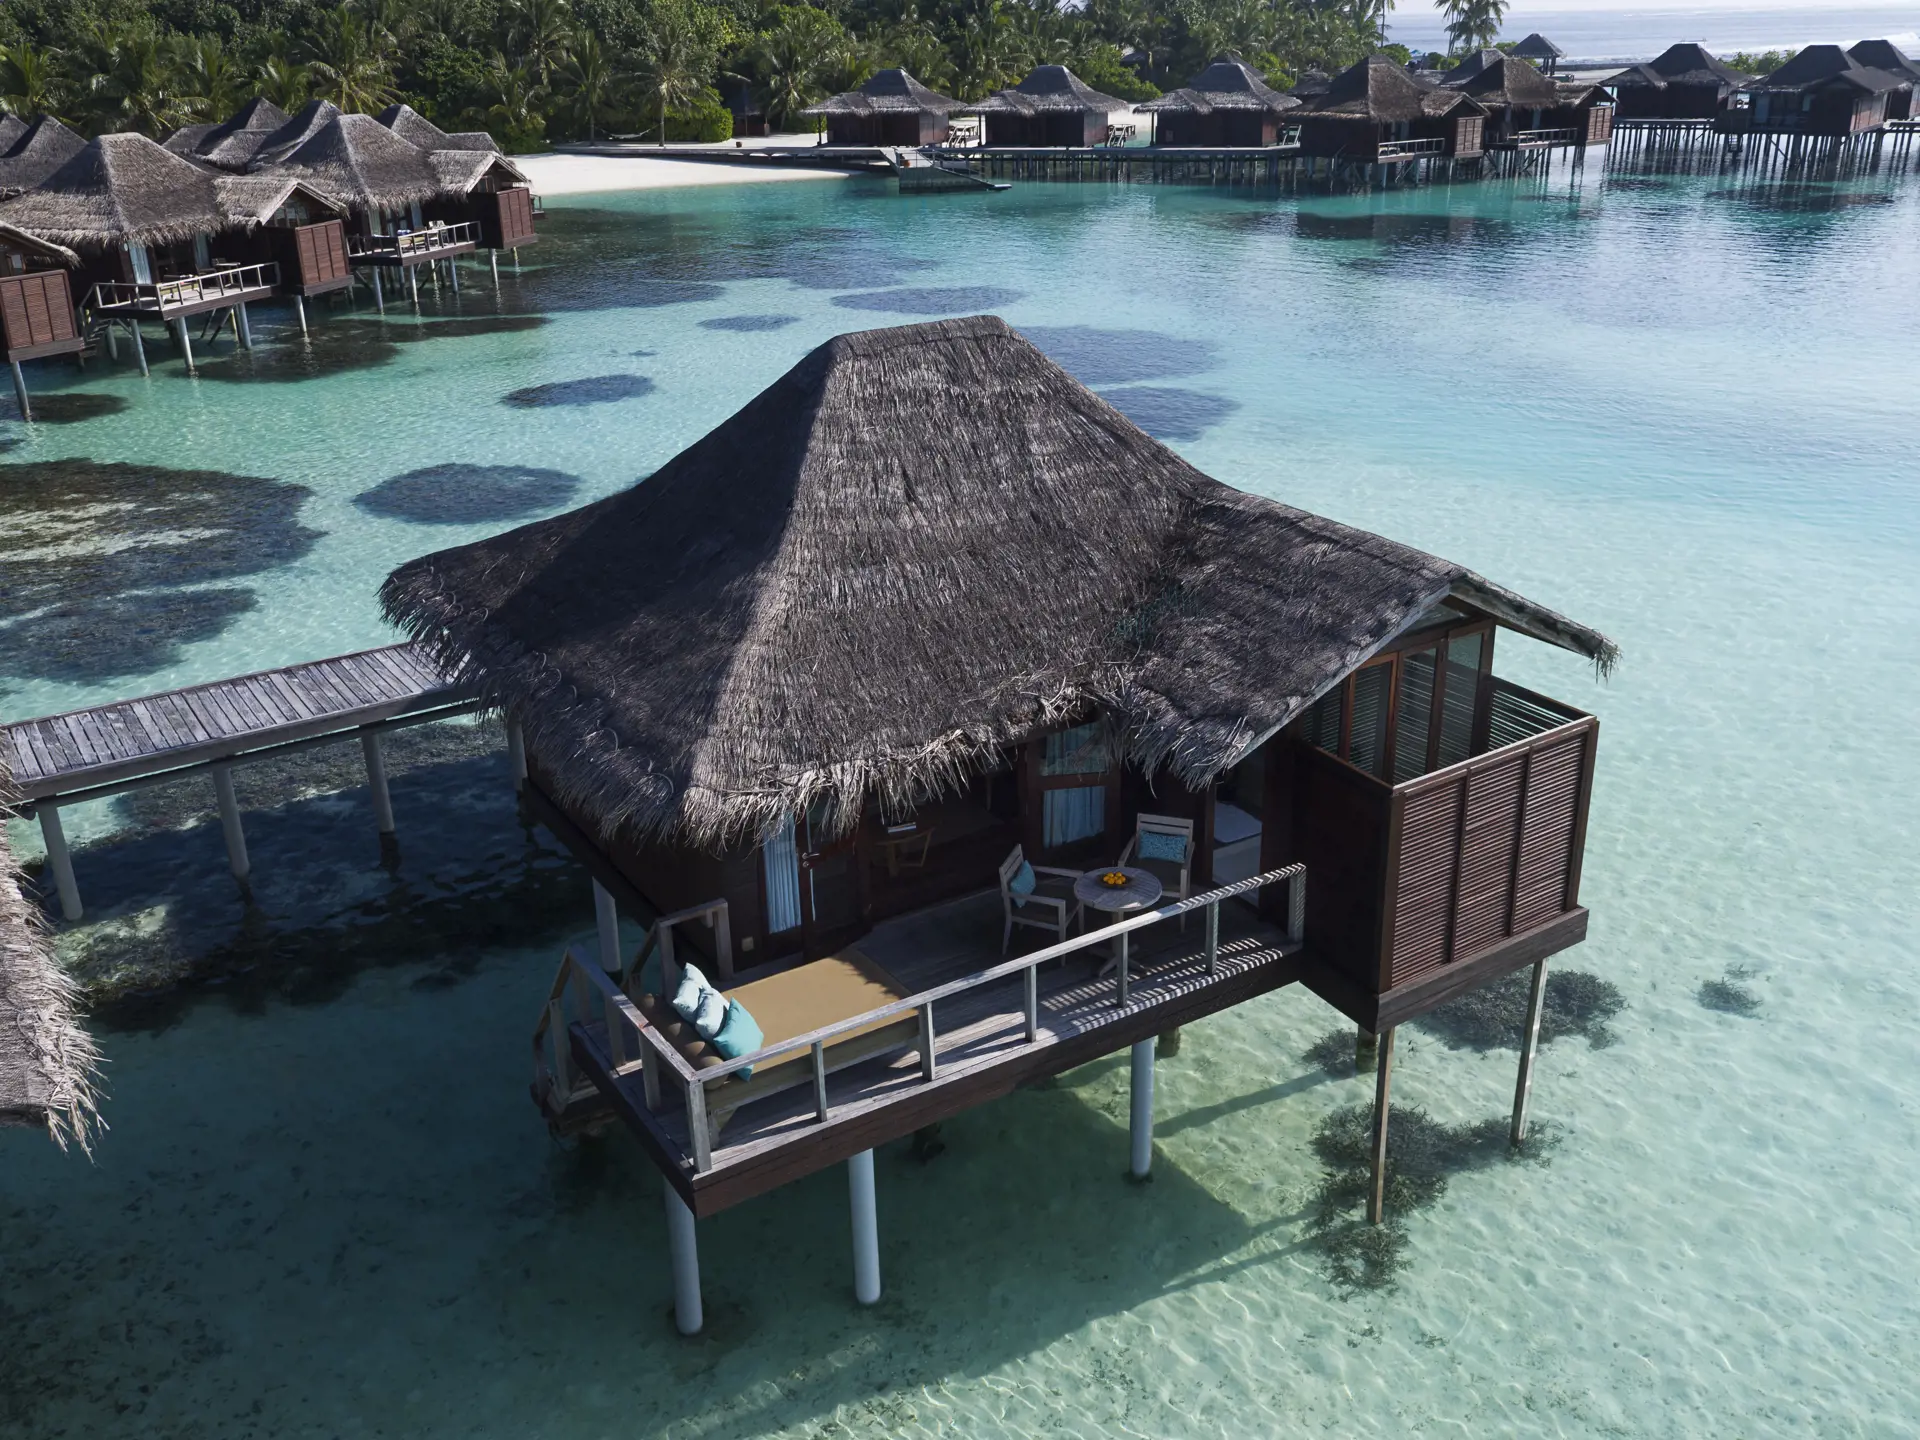 OVER WATER Villa - På Maldiverne har I jeres egen Over Water Villa direkte over det krystalklare vand.